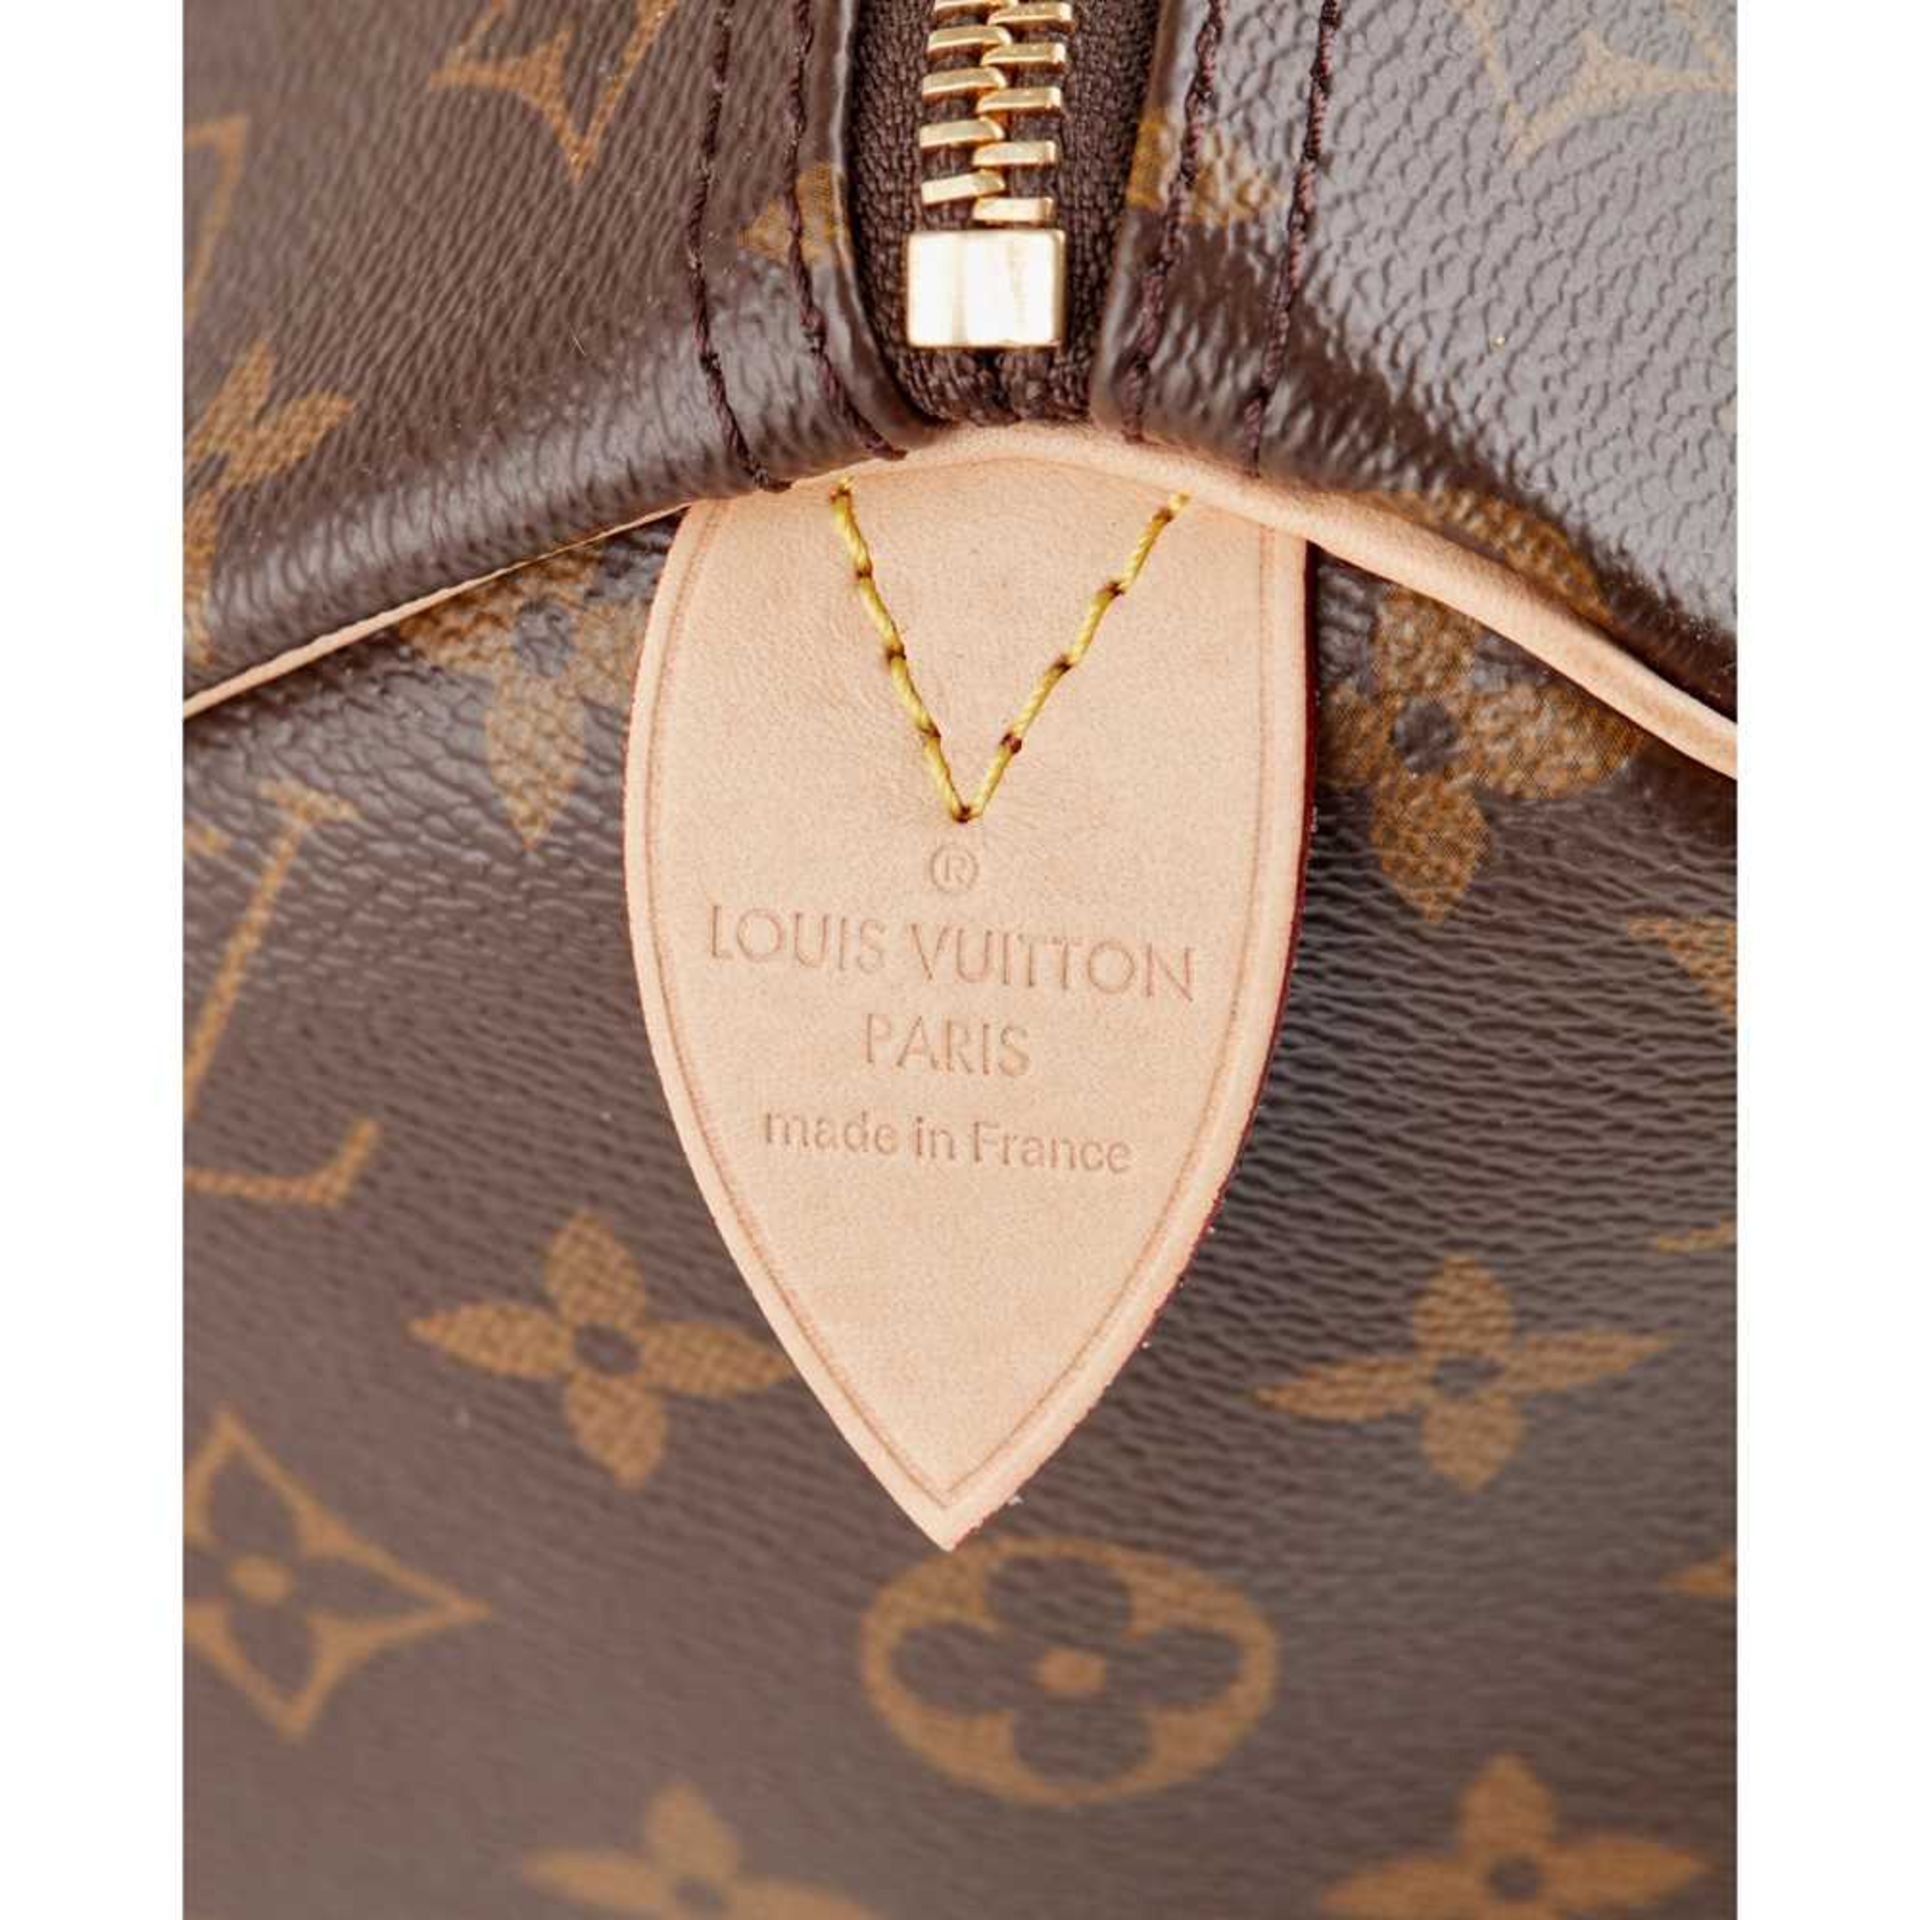 A Speedy 30 handbag, Louis Vuitton - Image 3 of 4